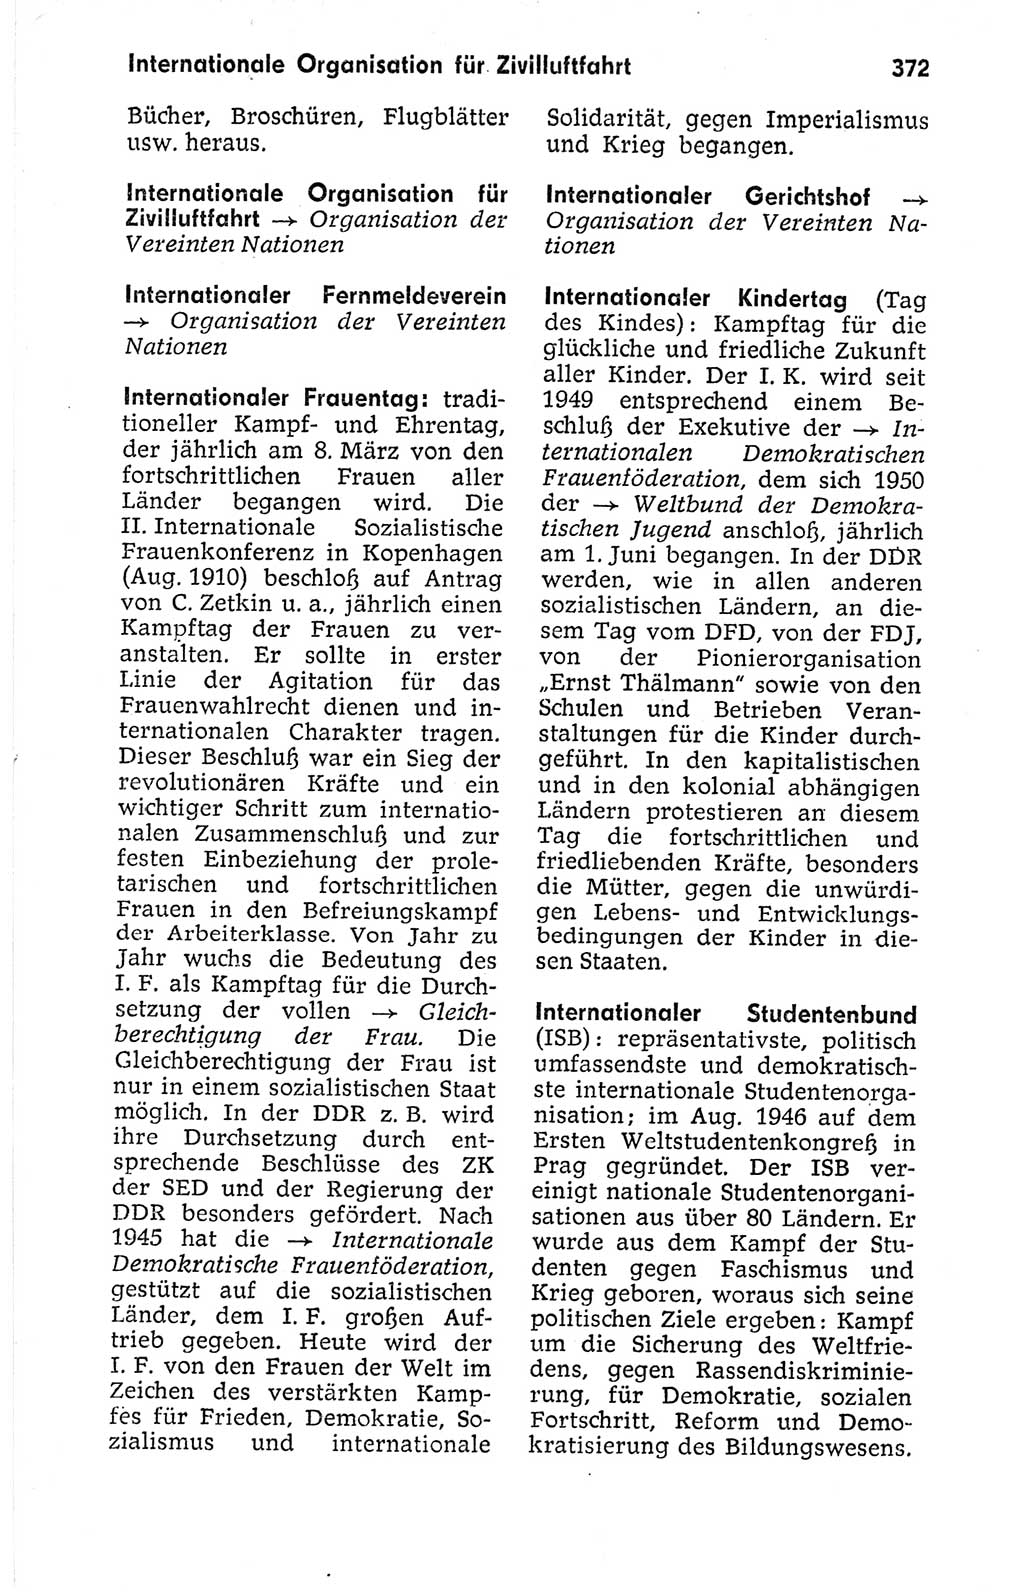 Kleines politisches Wörterbuch [Deutsche Demokratische Republik (DDR)] 1973, Seite 372 (Kl. pol. Wb. DDR 1973, S. 372)